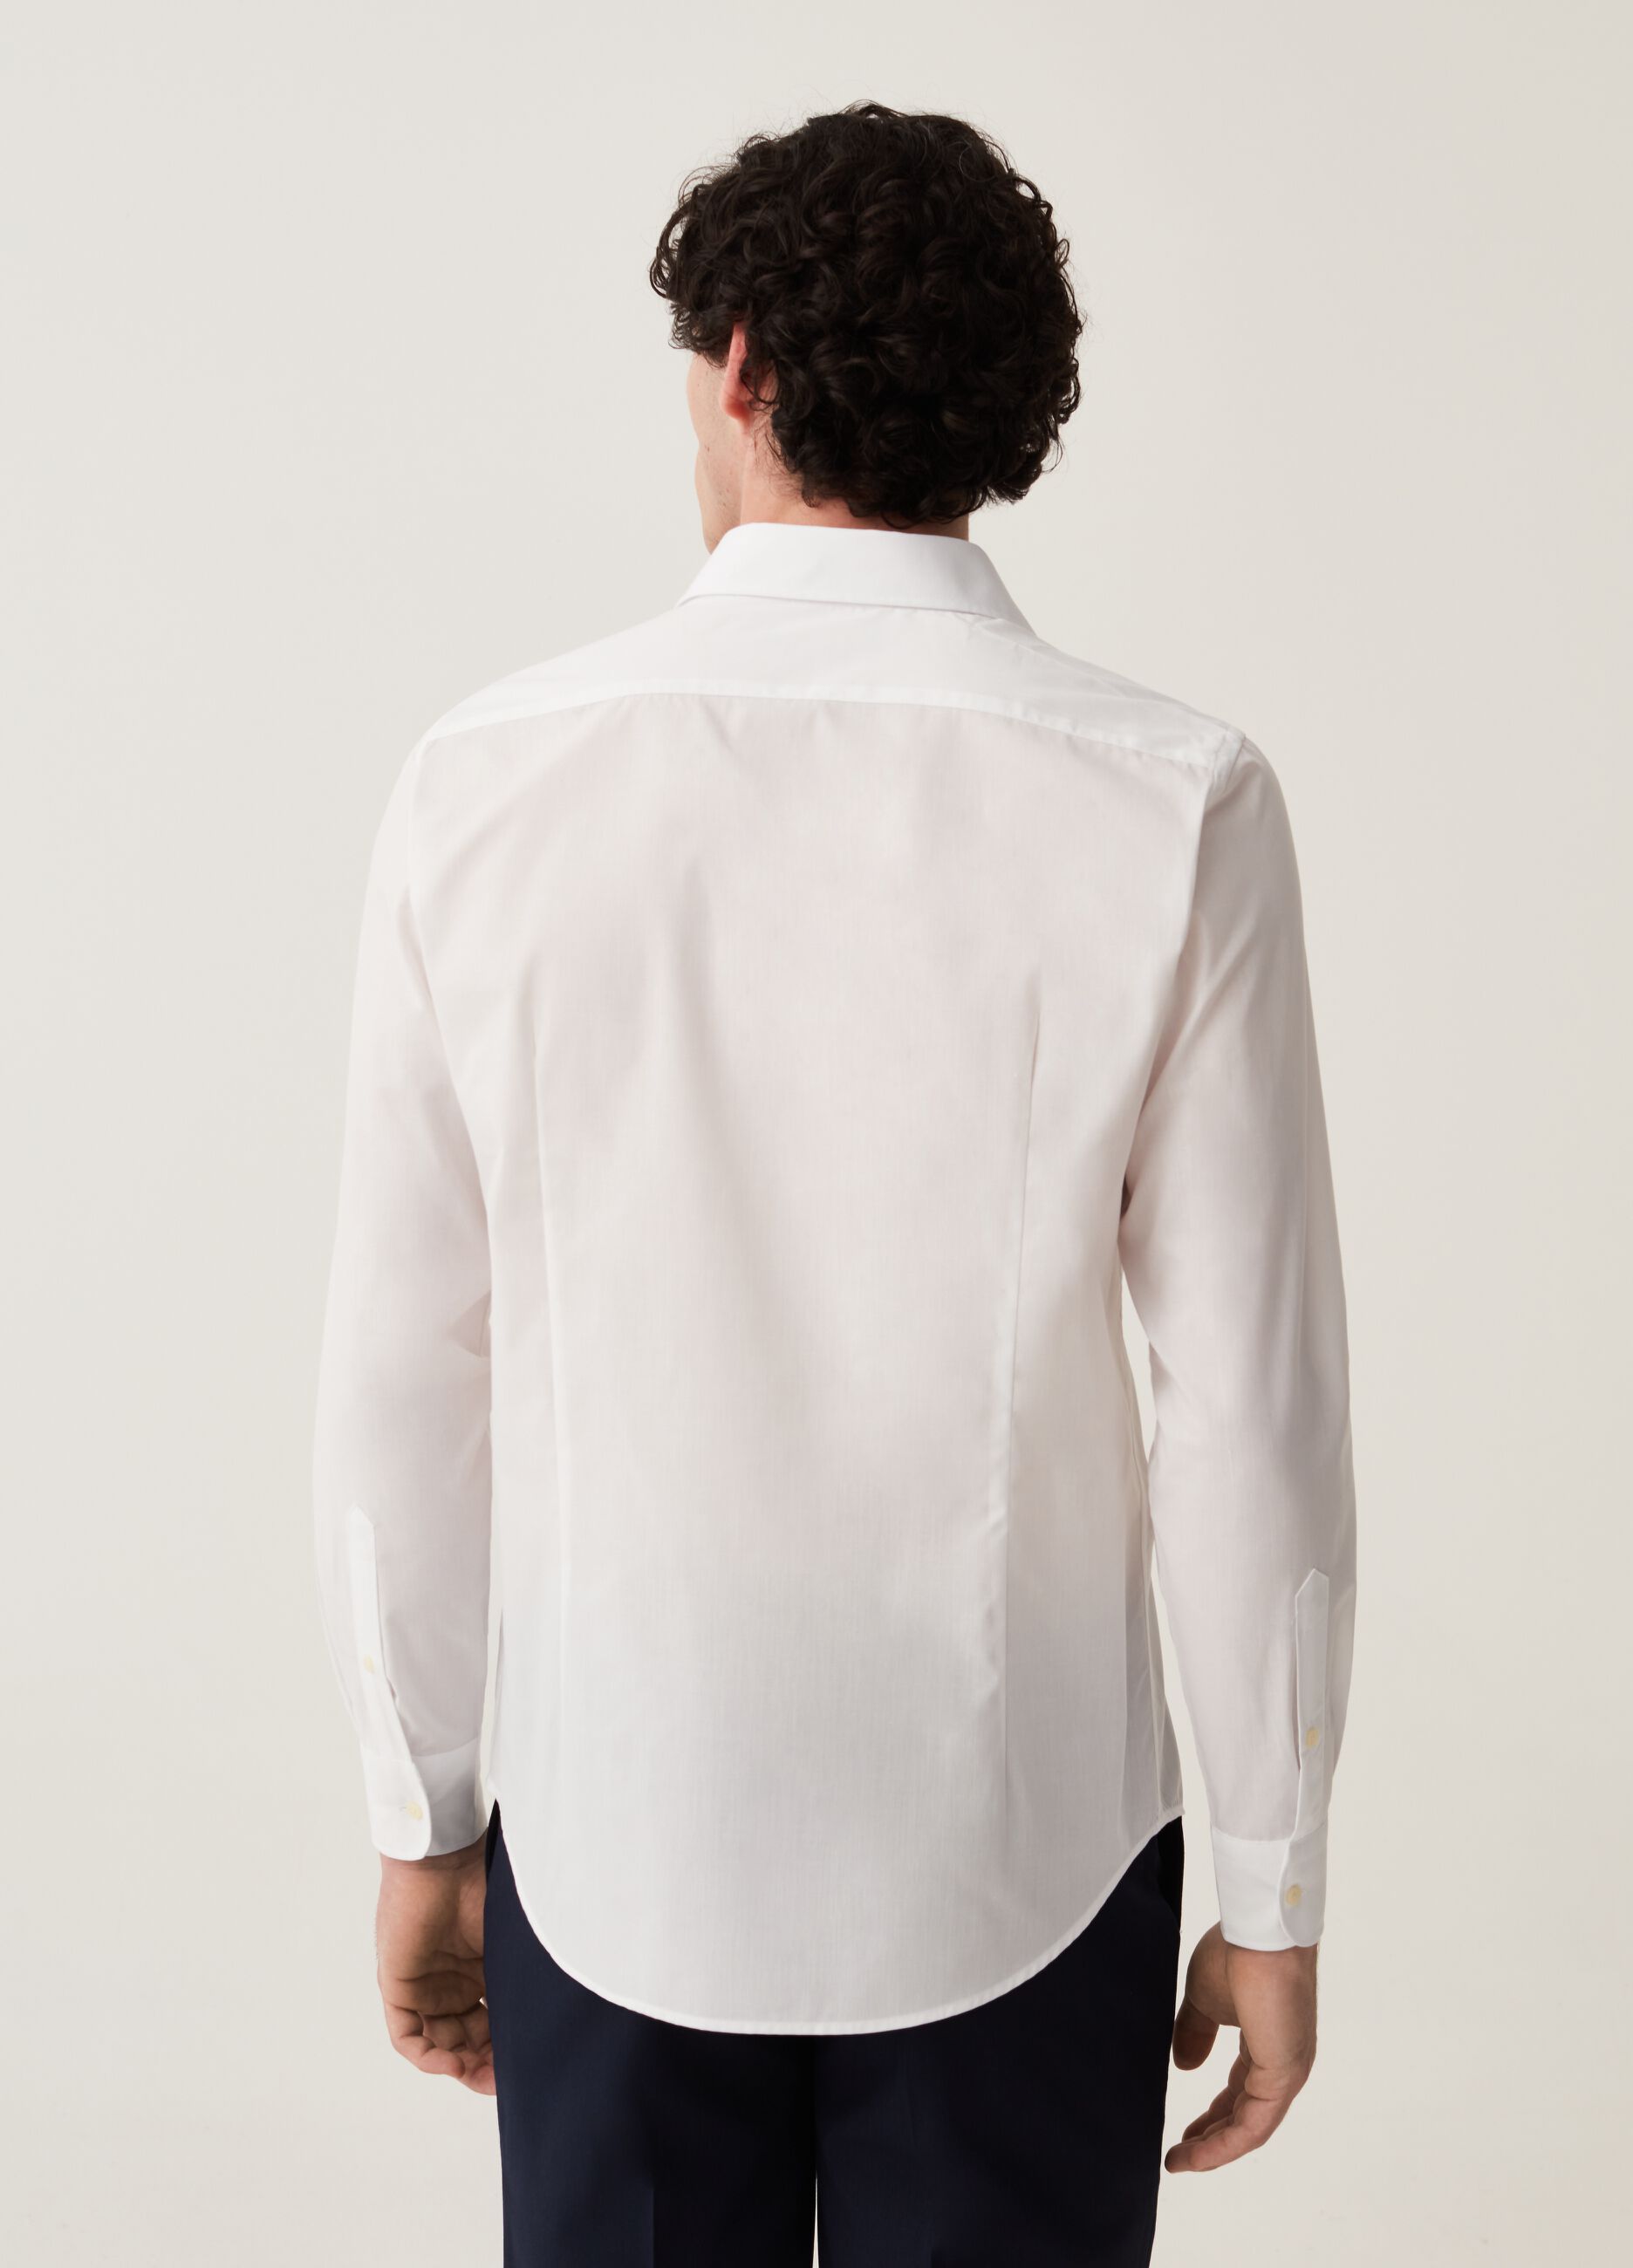 Camisa slim fit de algodón planchado fácil